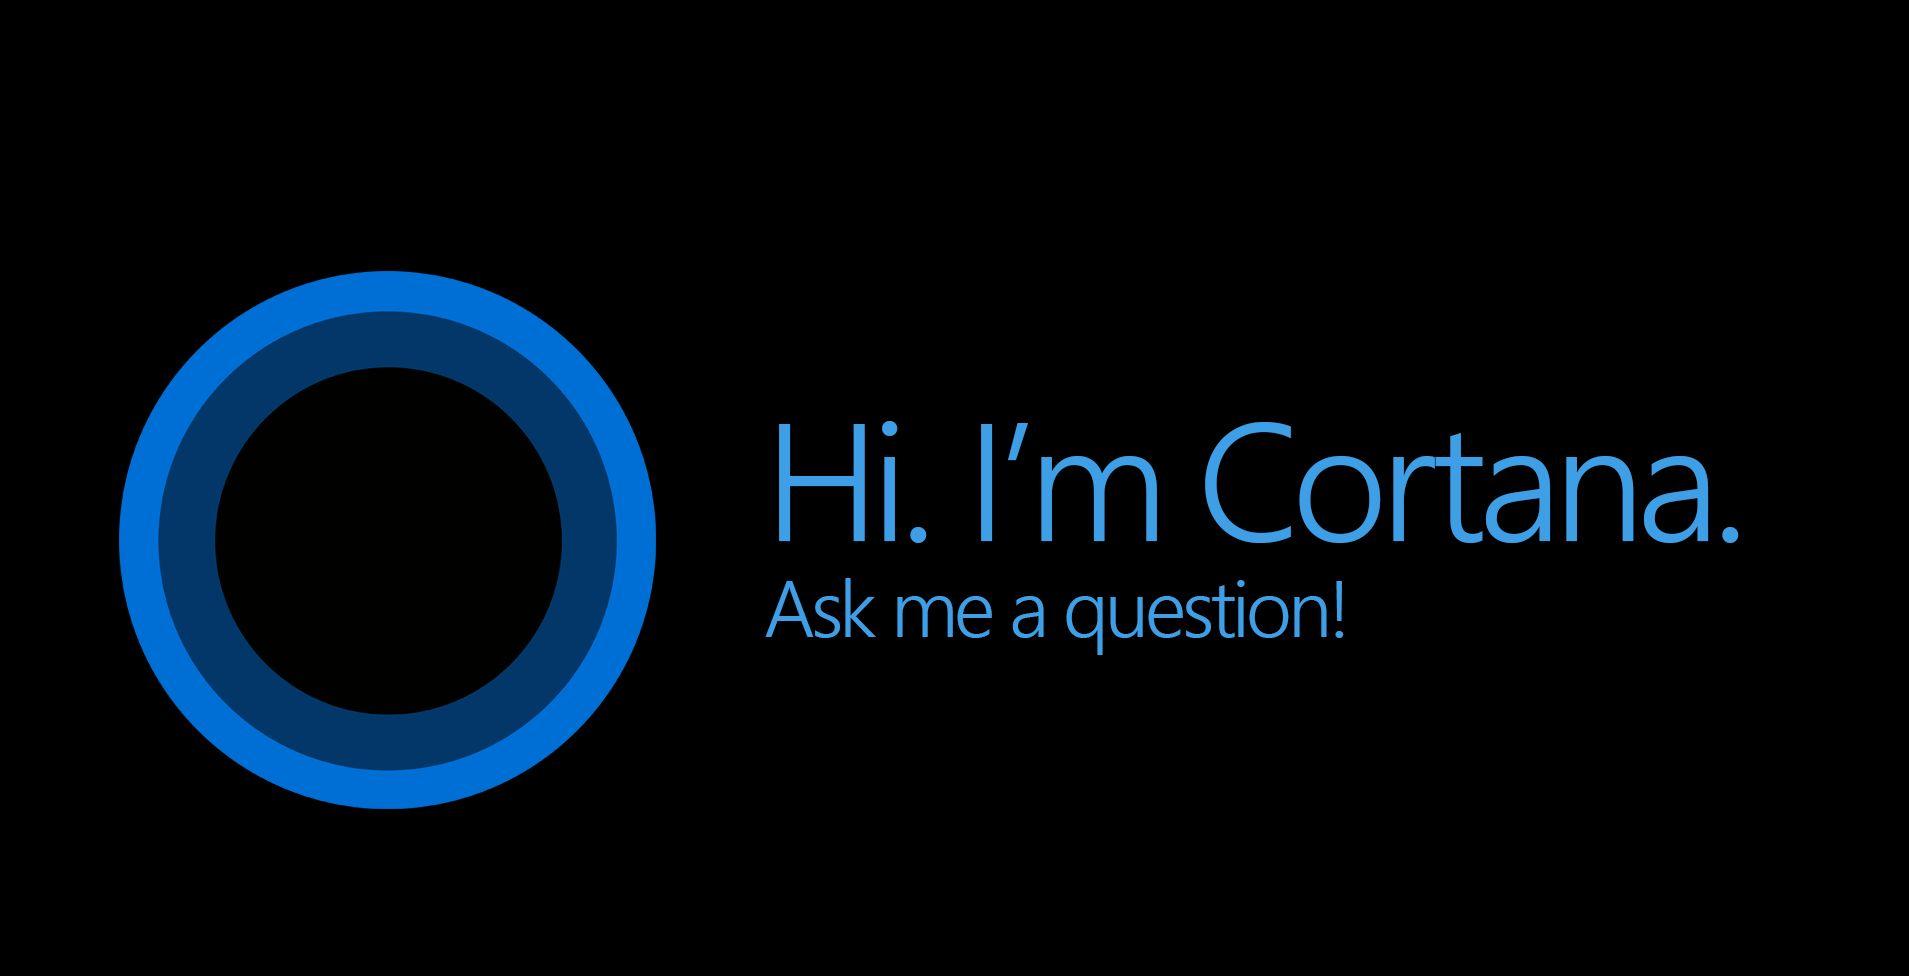 migliorare la SEO: Cortana